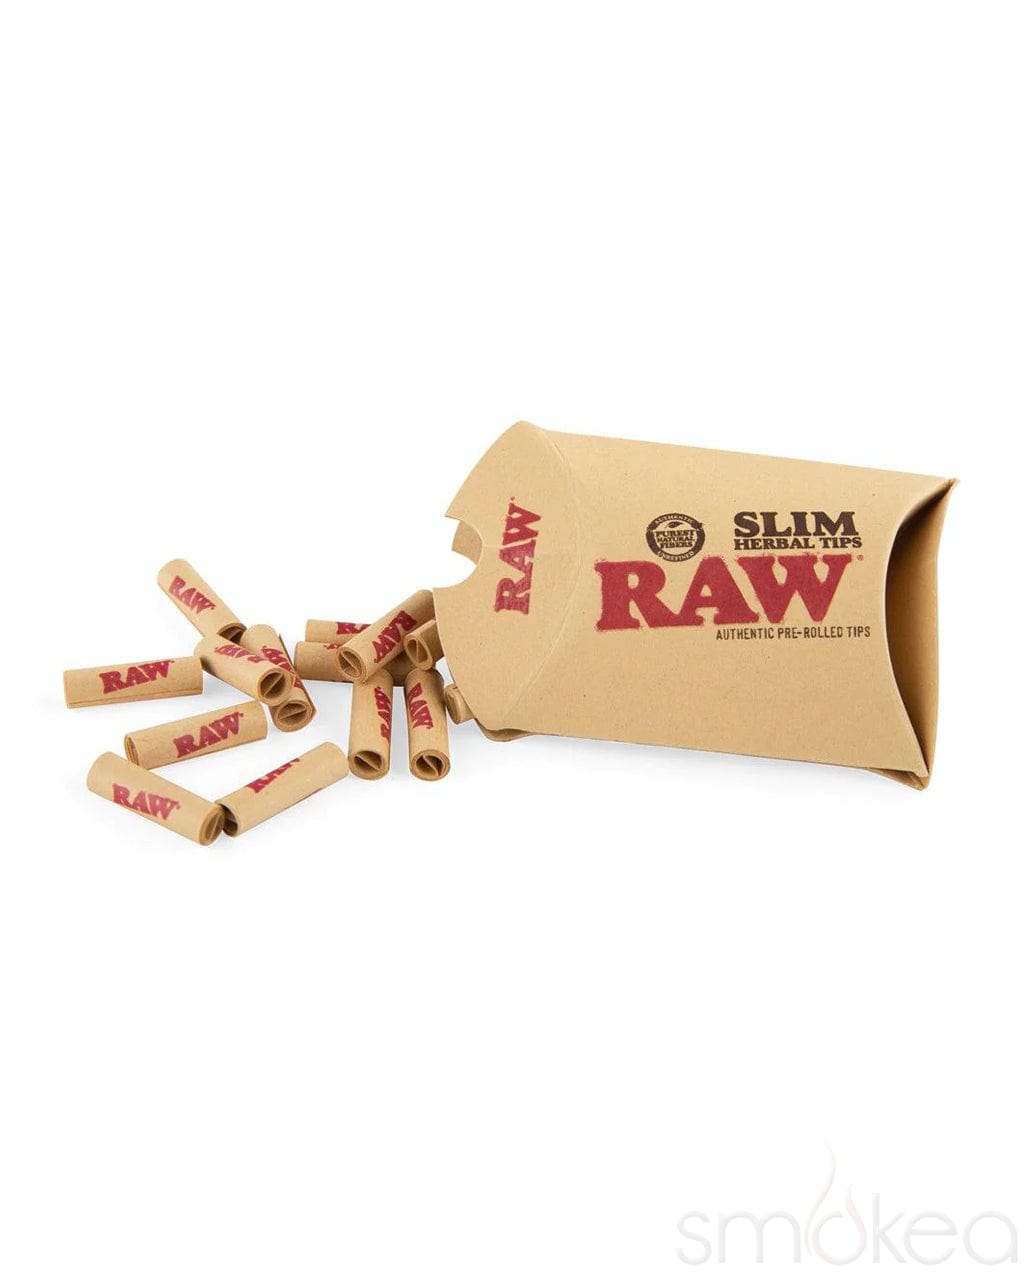 Raw Pre-Rolled Slim Herbal Tips